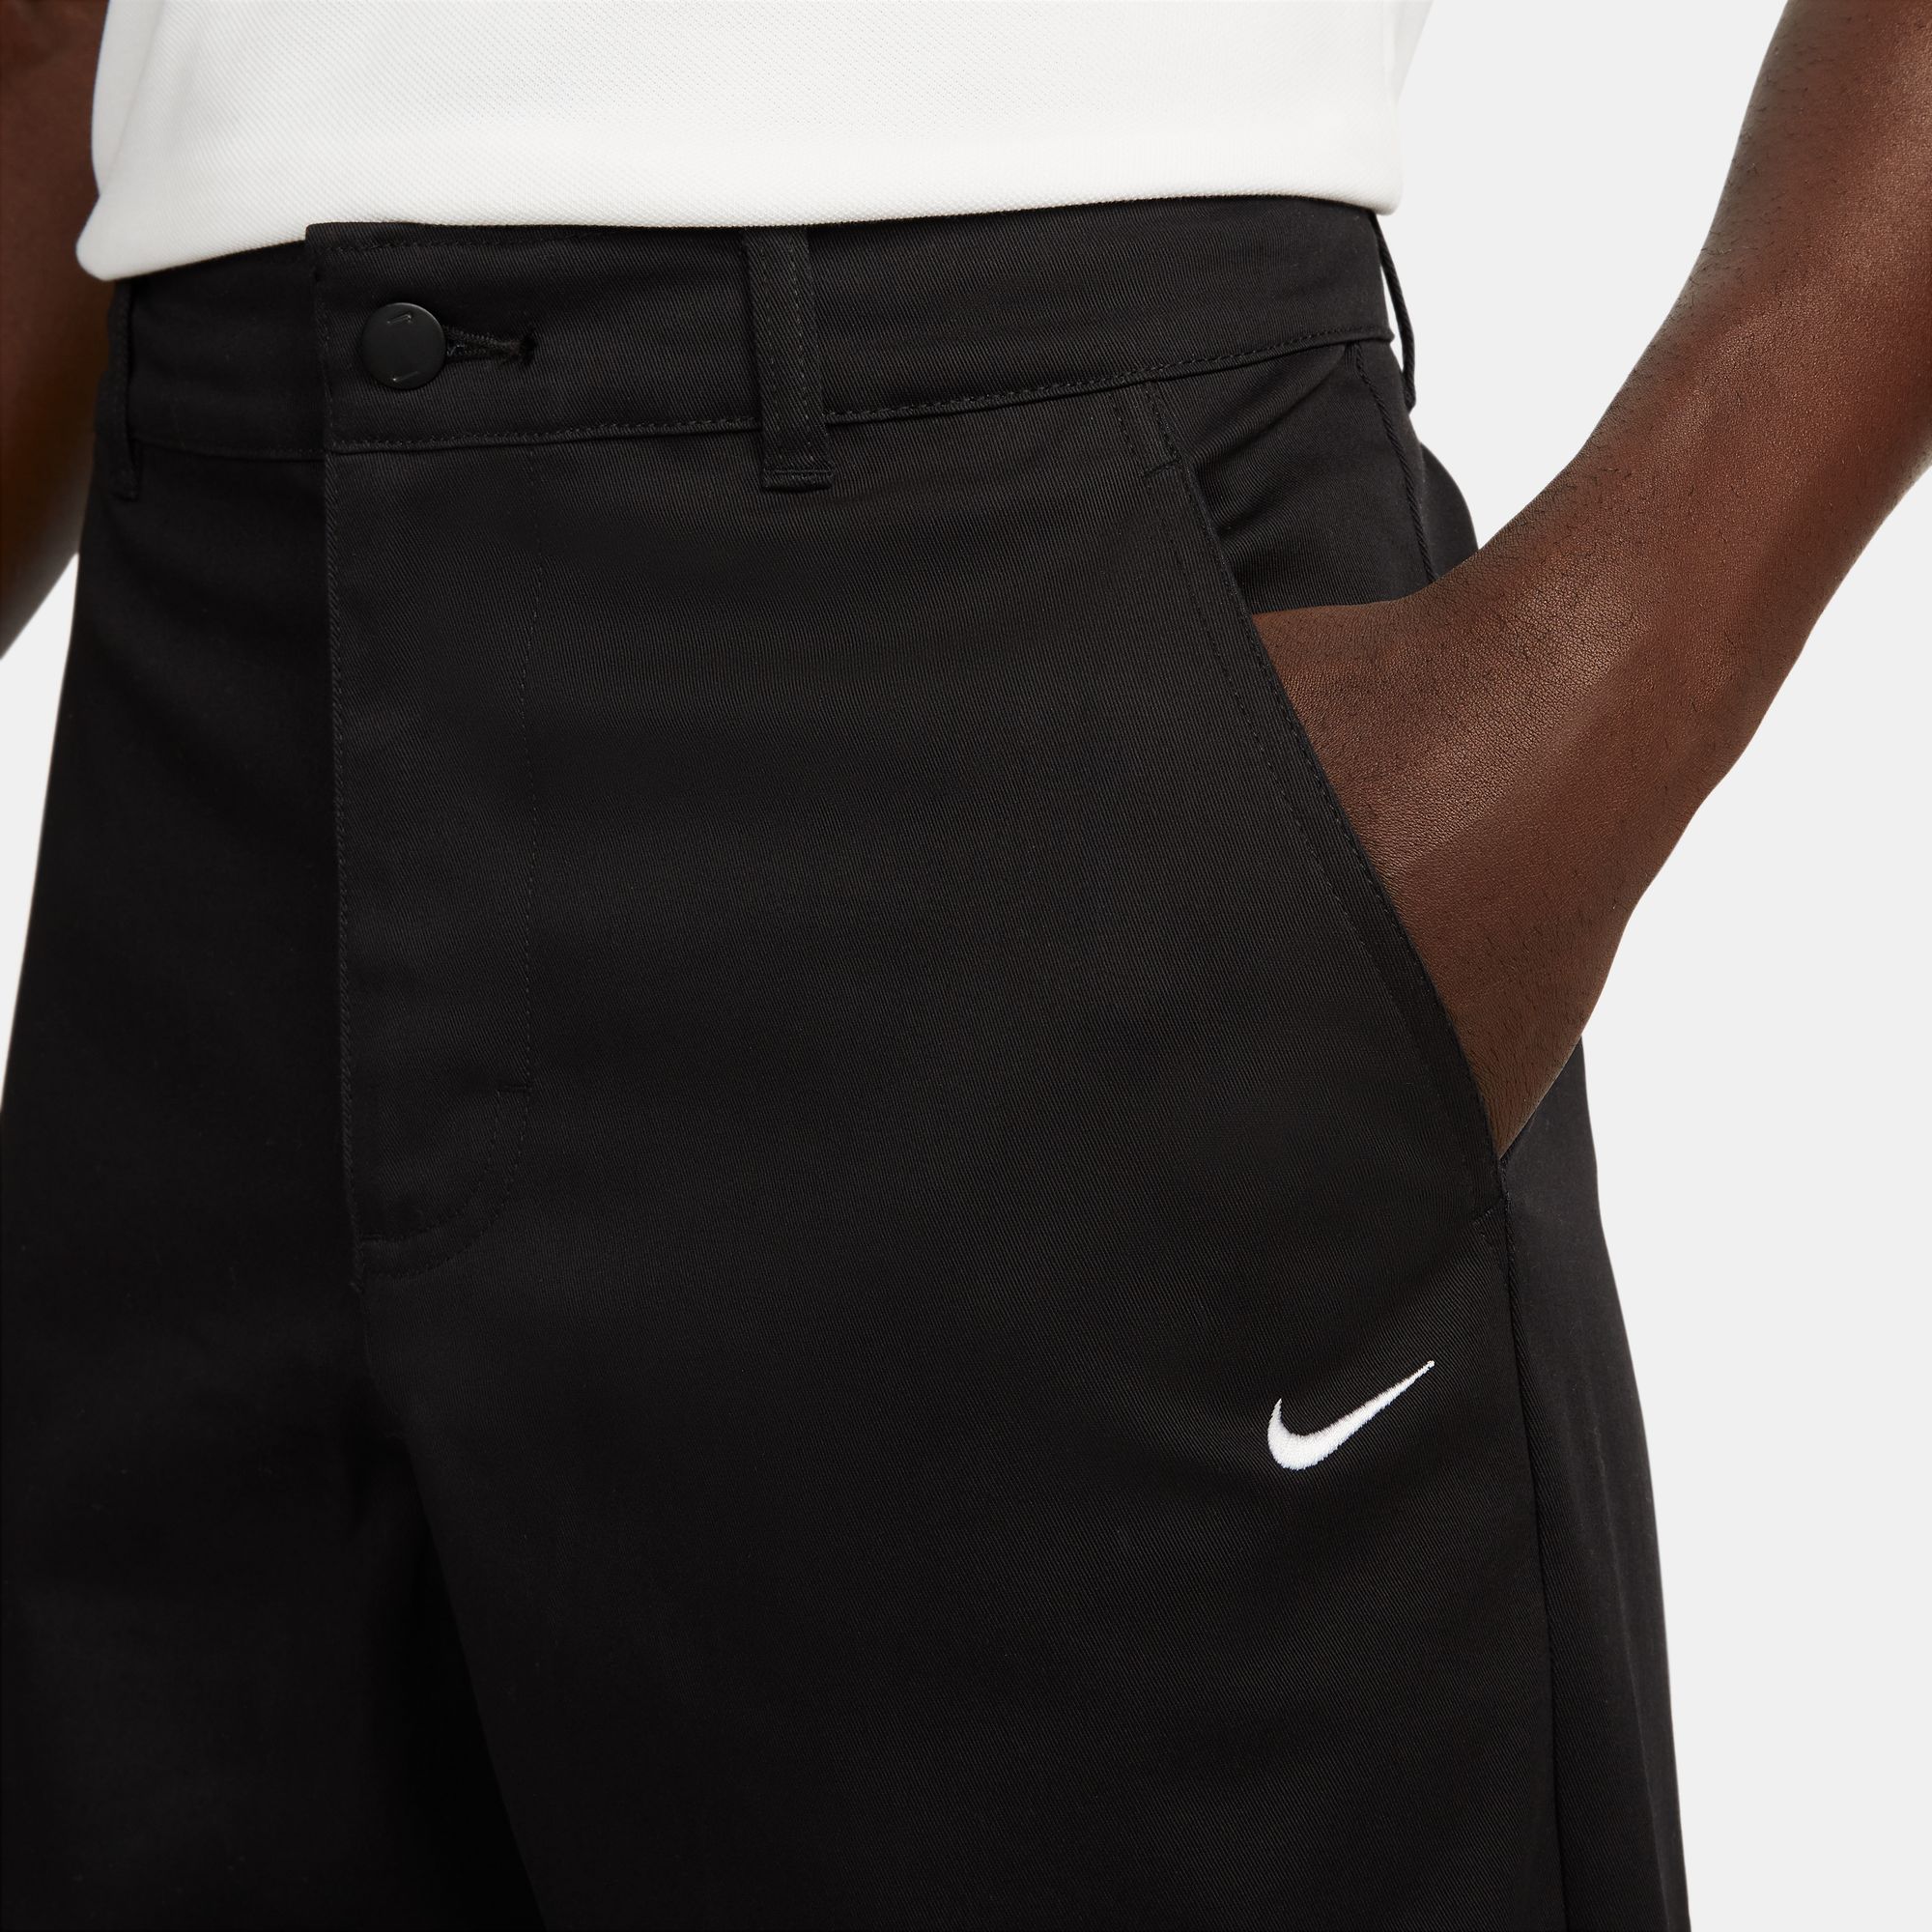 Nike SB Men's Unlined Cotton Chino Pants Black 03